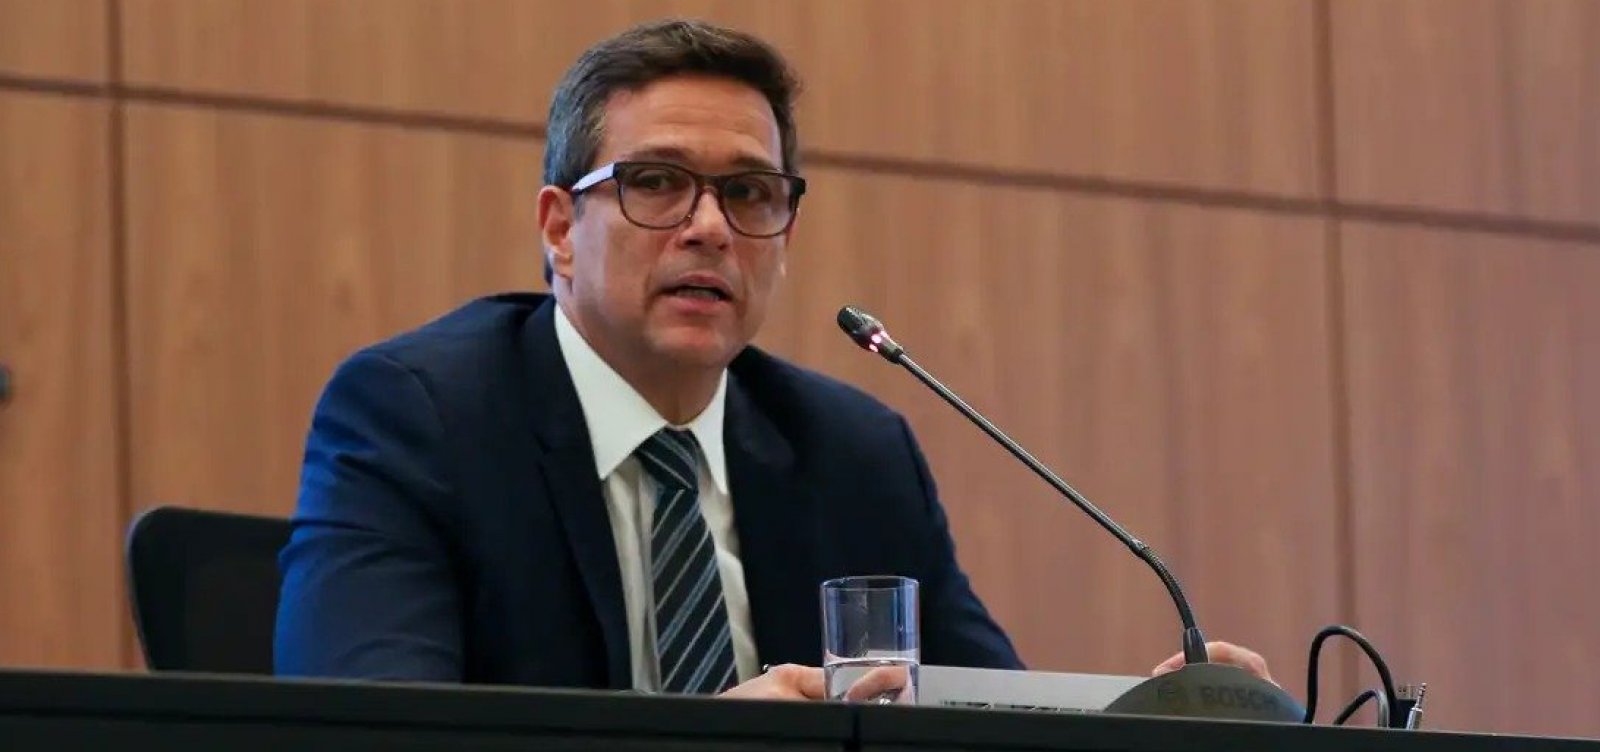 Campos Neto diz que "ruídos" motivaram interrupção nos cortes de juros pelo Banco Central